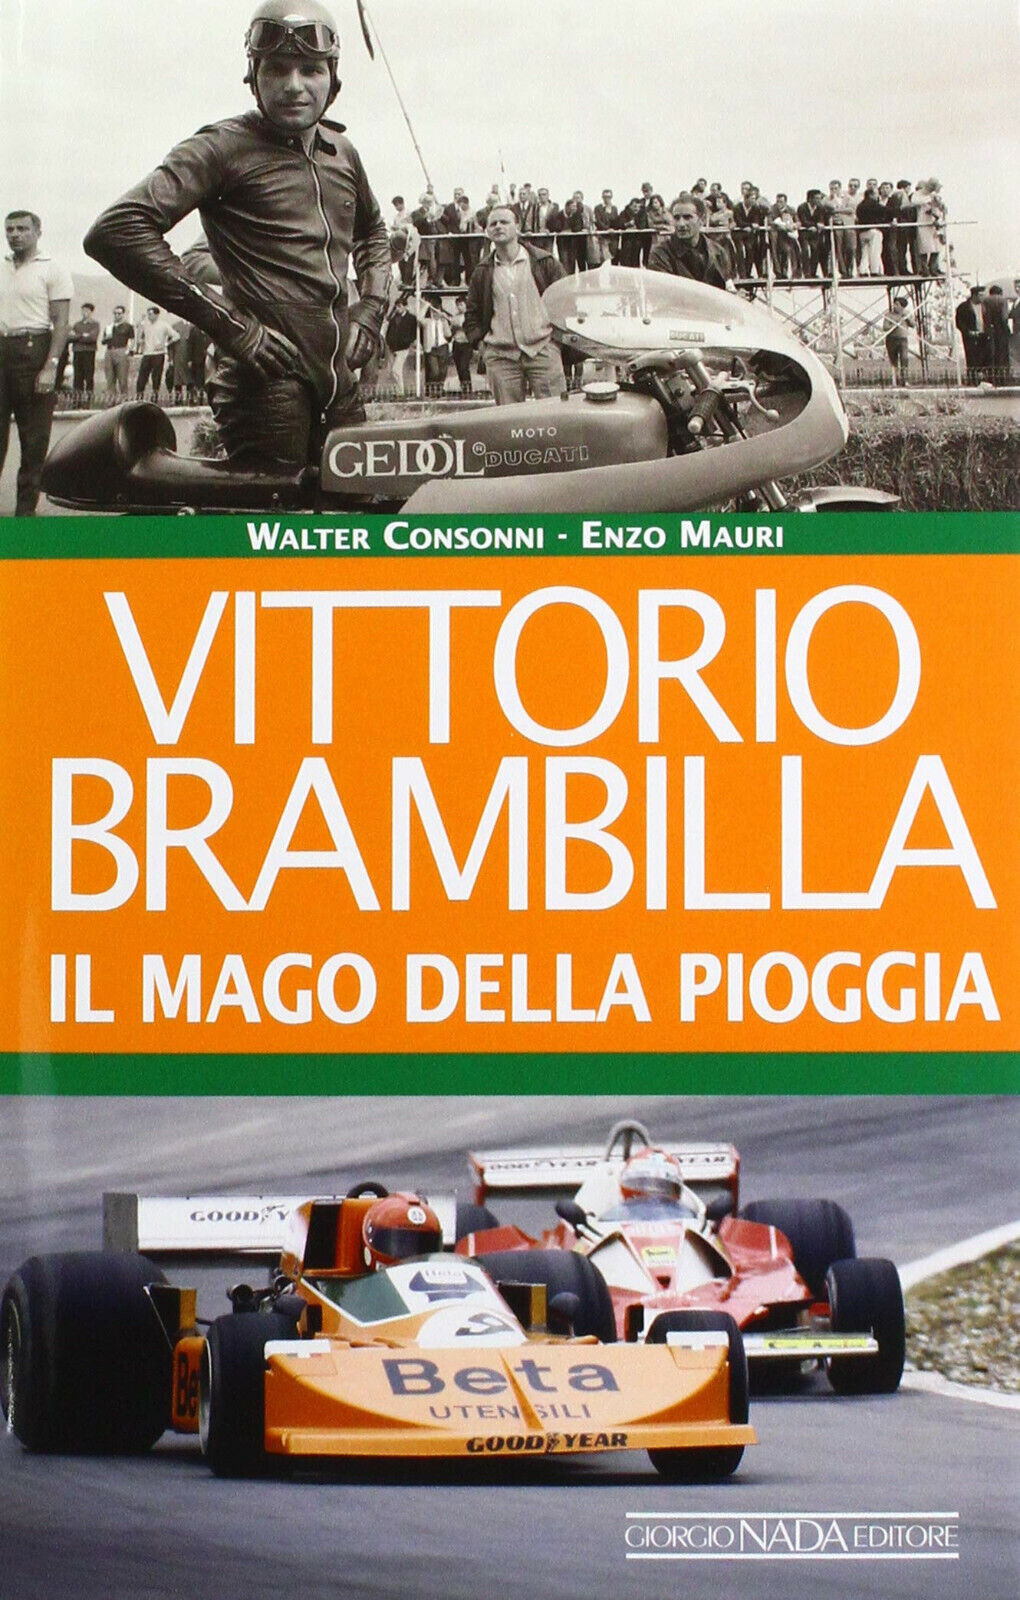 Vittorio Brambilla. Il mago della pioggia - Consonni, Enzo Mauri - Nada, 2019